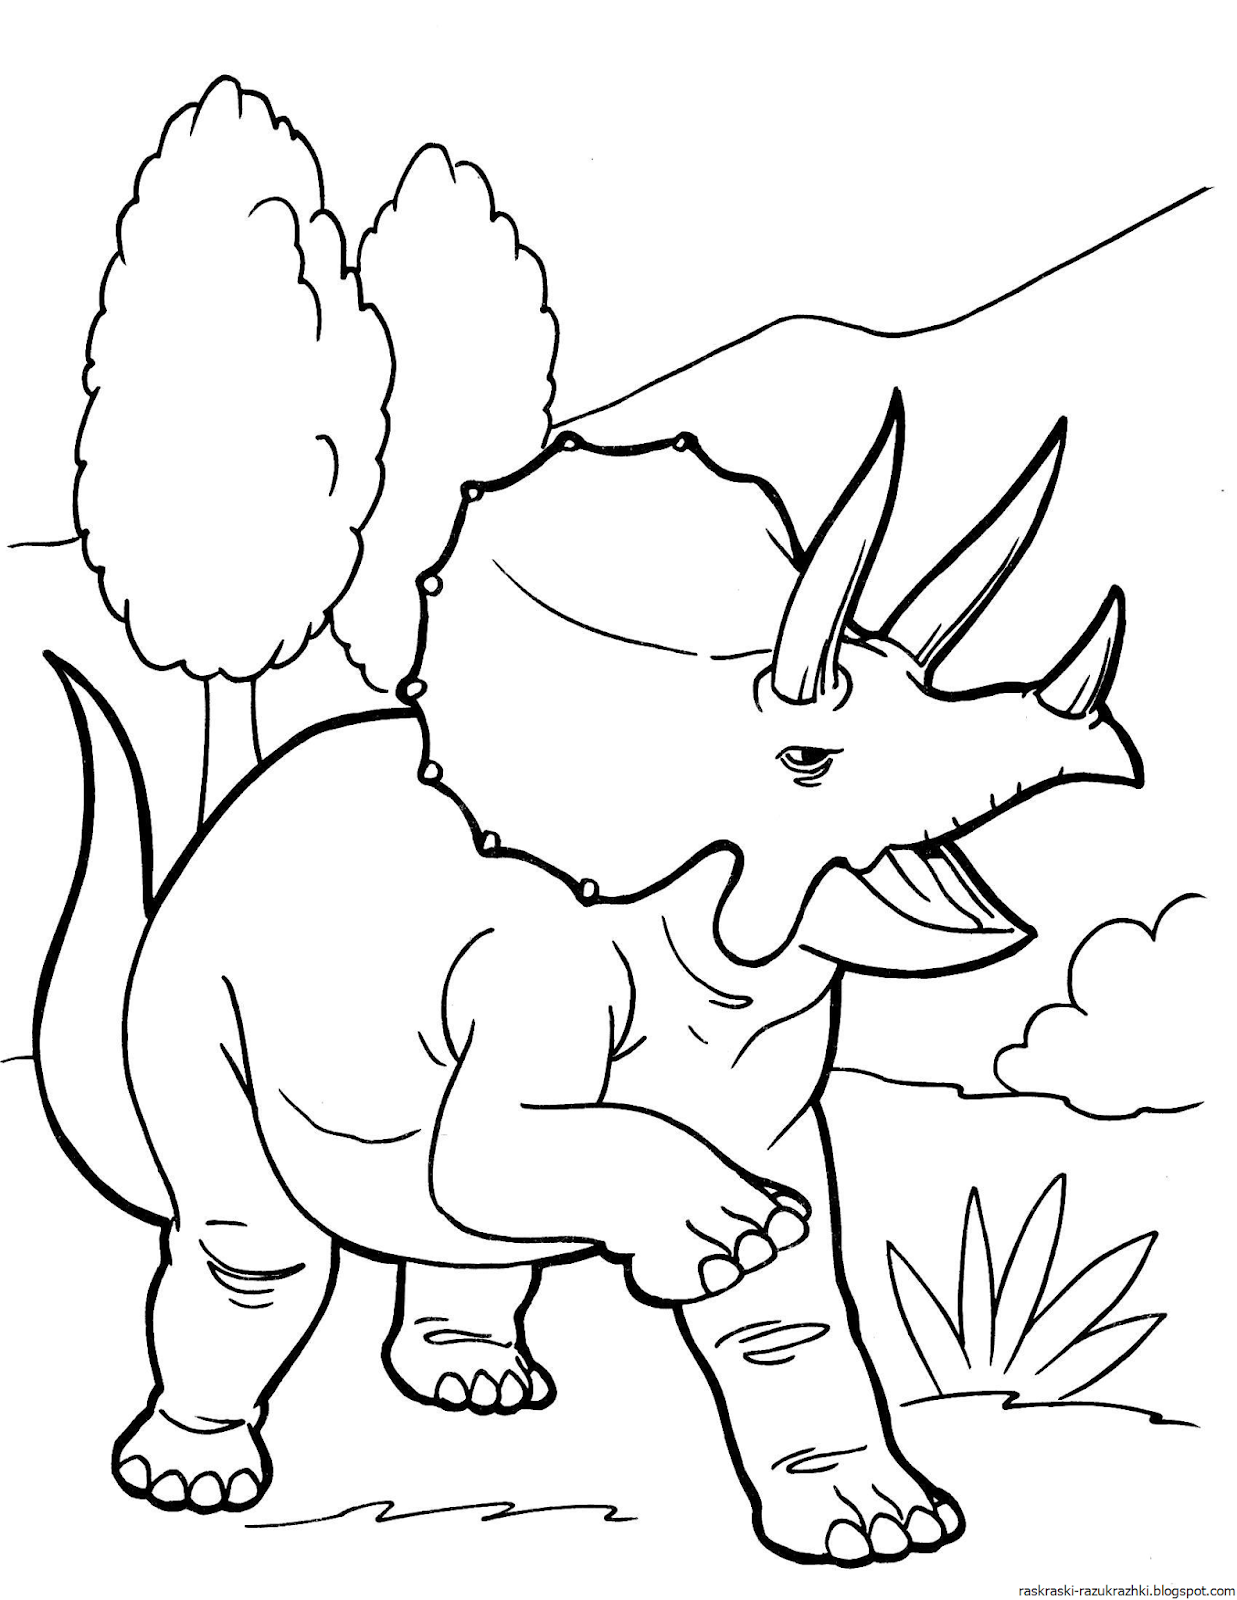 Динозавры раскраска а4. Динозавры / раскраска. Динозавр раскраска для детей. Раскраски для мальчиков динозавры. Динозаврики раскраска для детей.